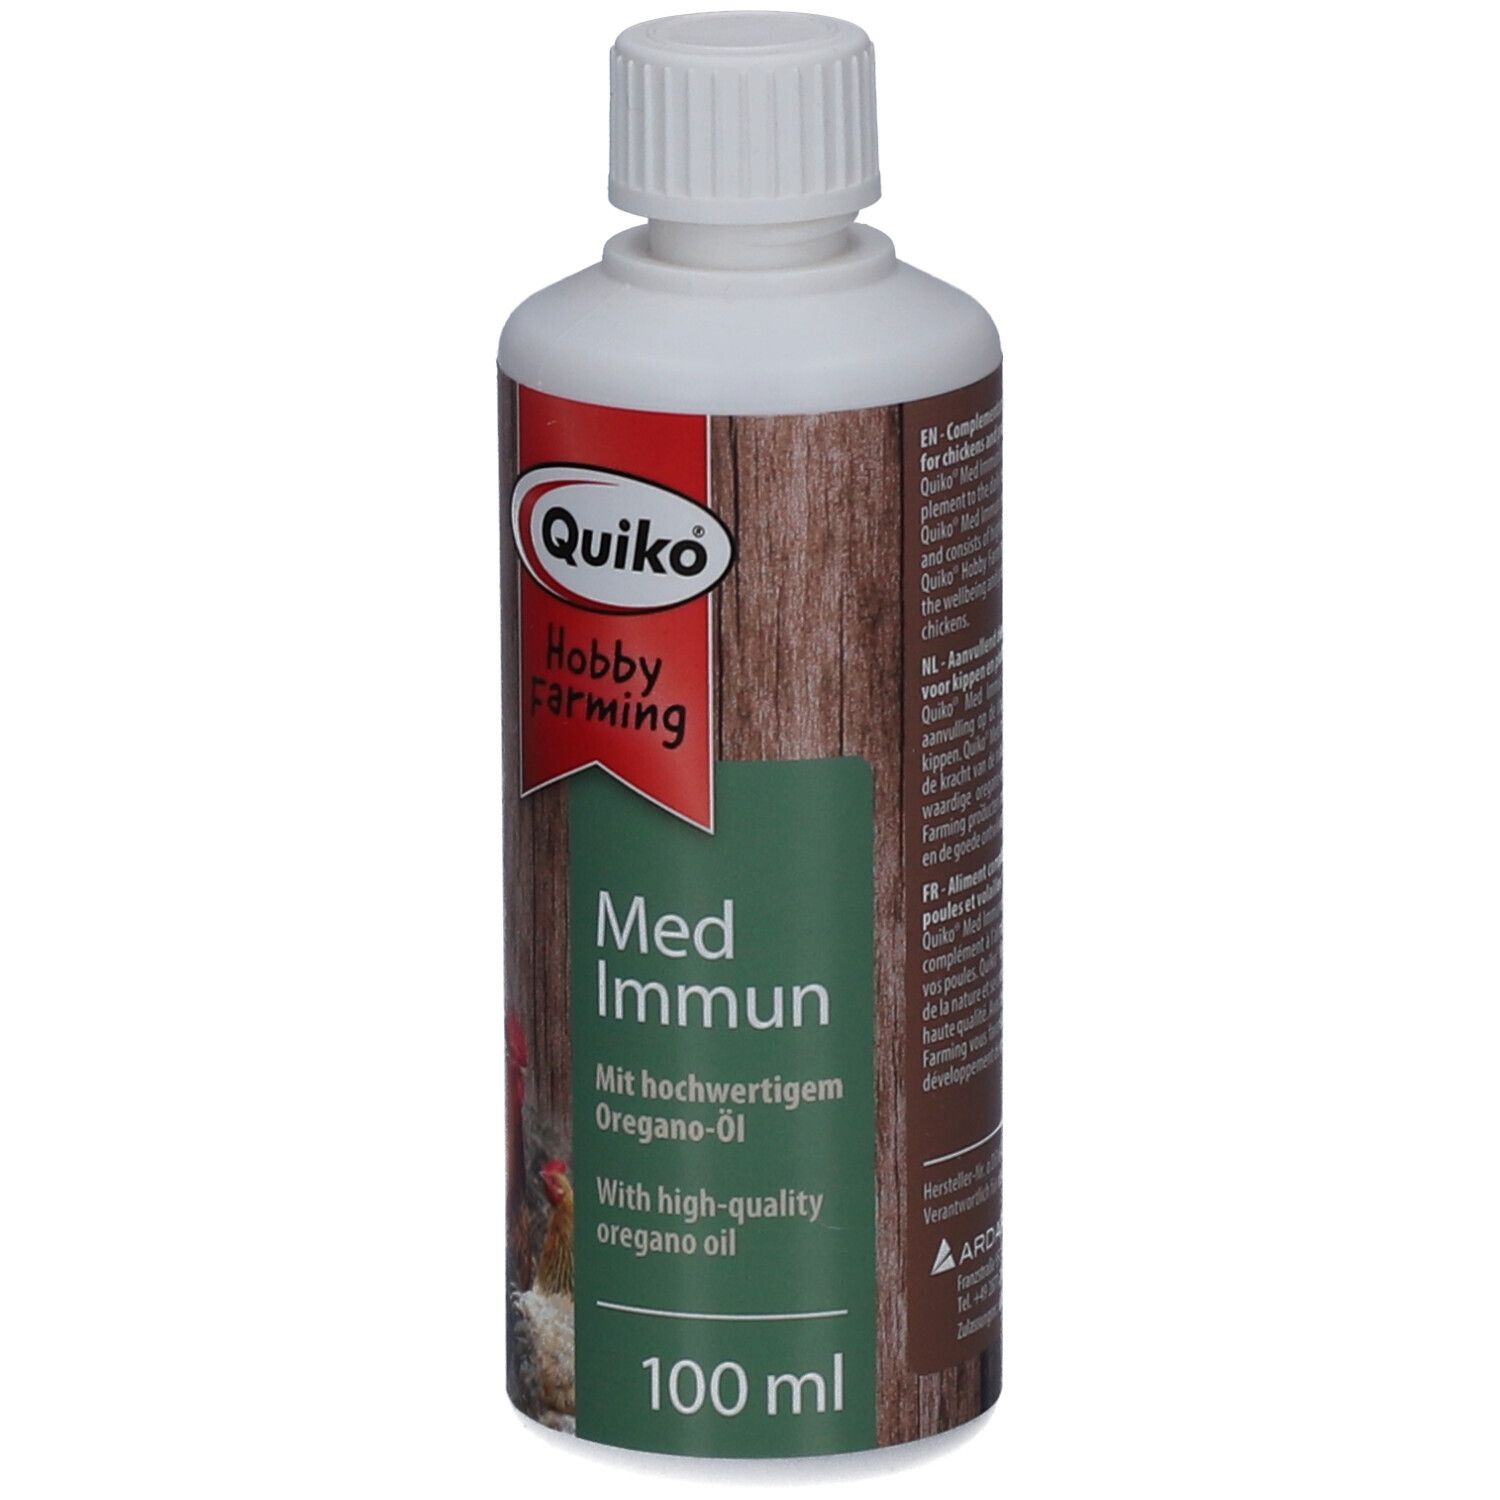 Quiko® Hobby Farming Med: Immun